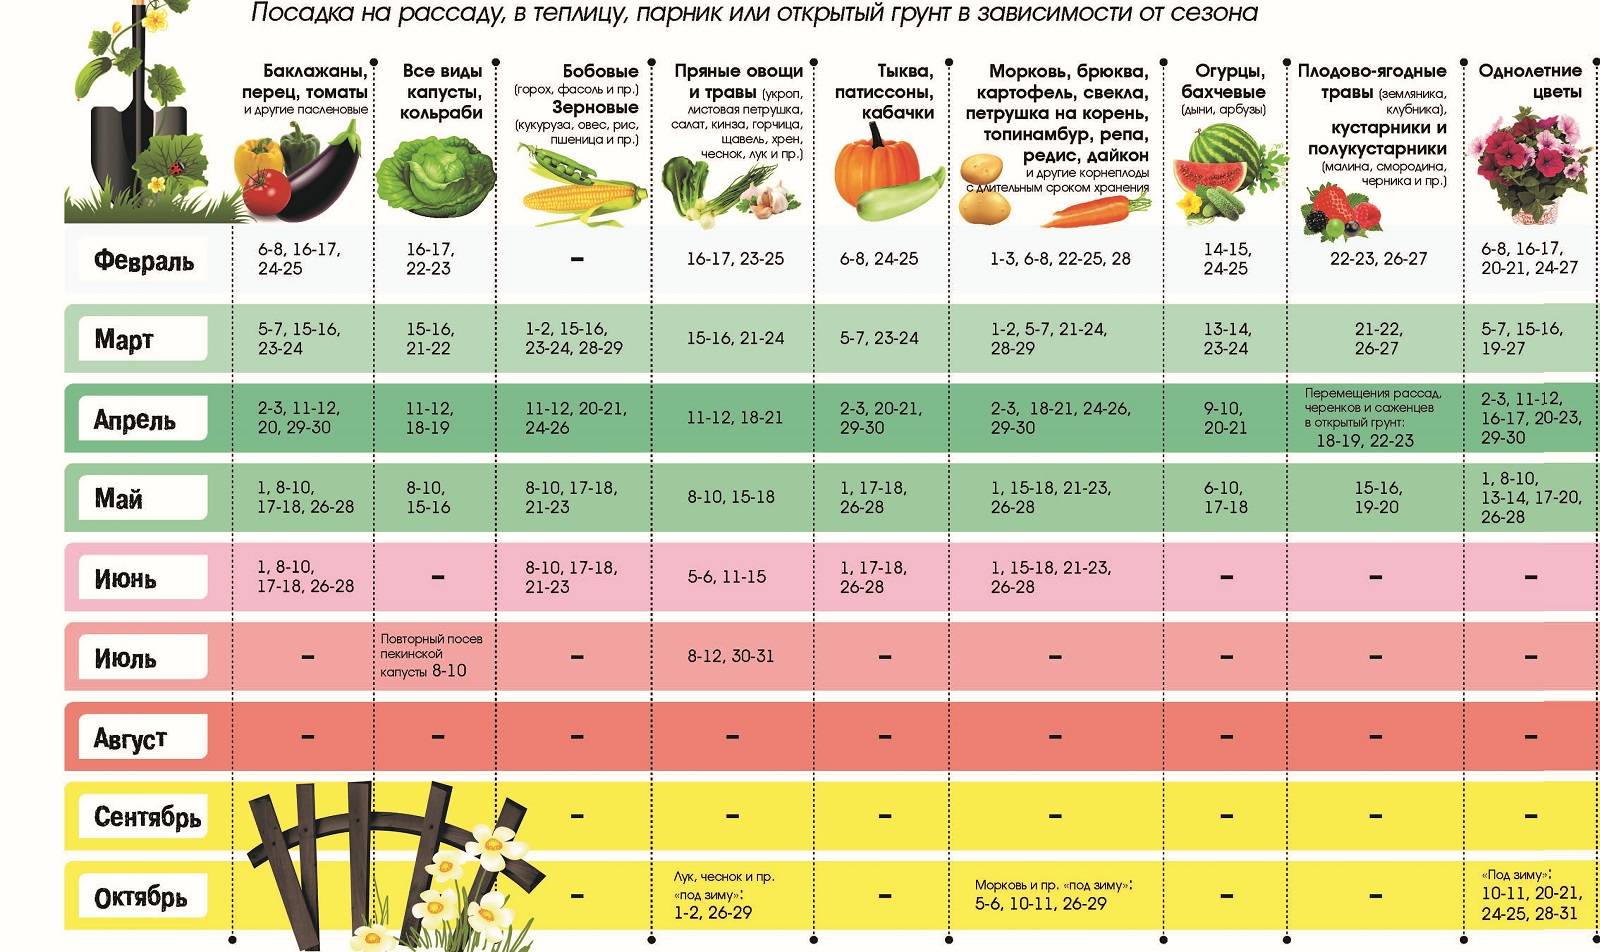 Когда сажать помидоры на рассаду в 2021 году по лунному календарю в средней полосе россии: таблица